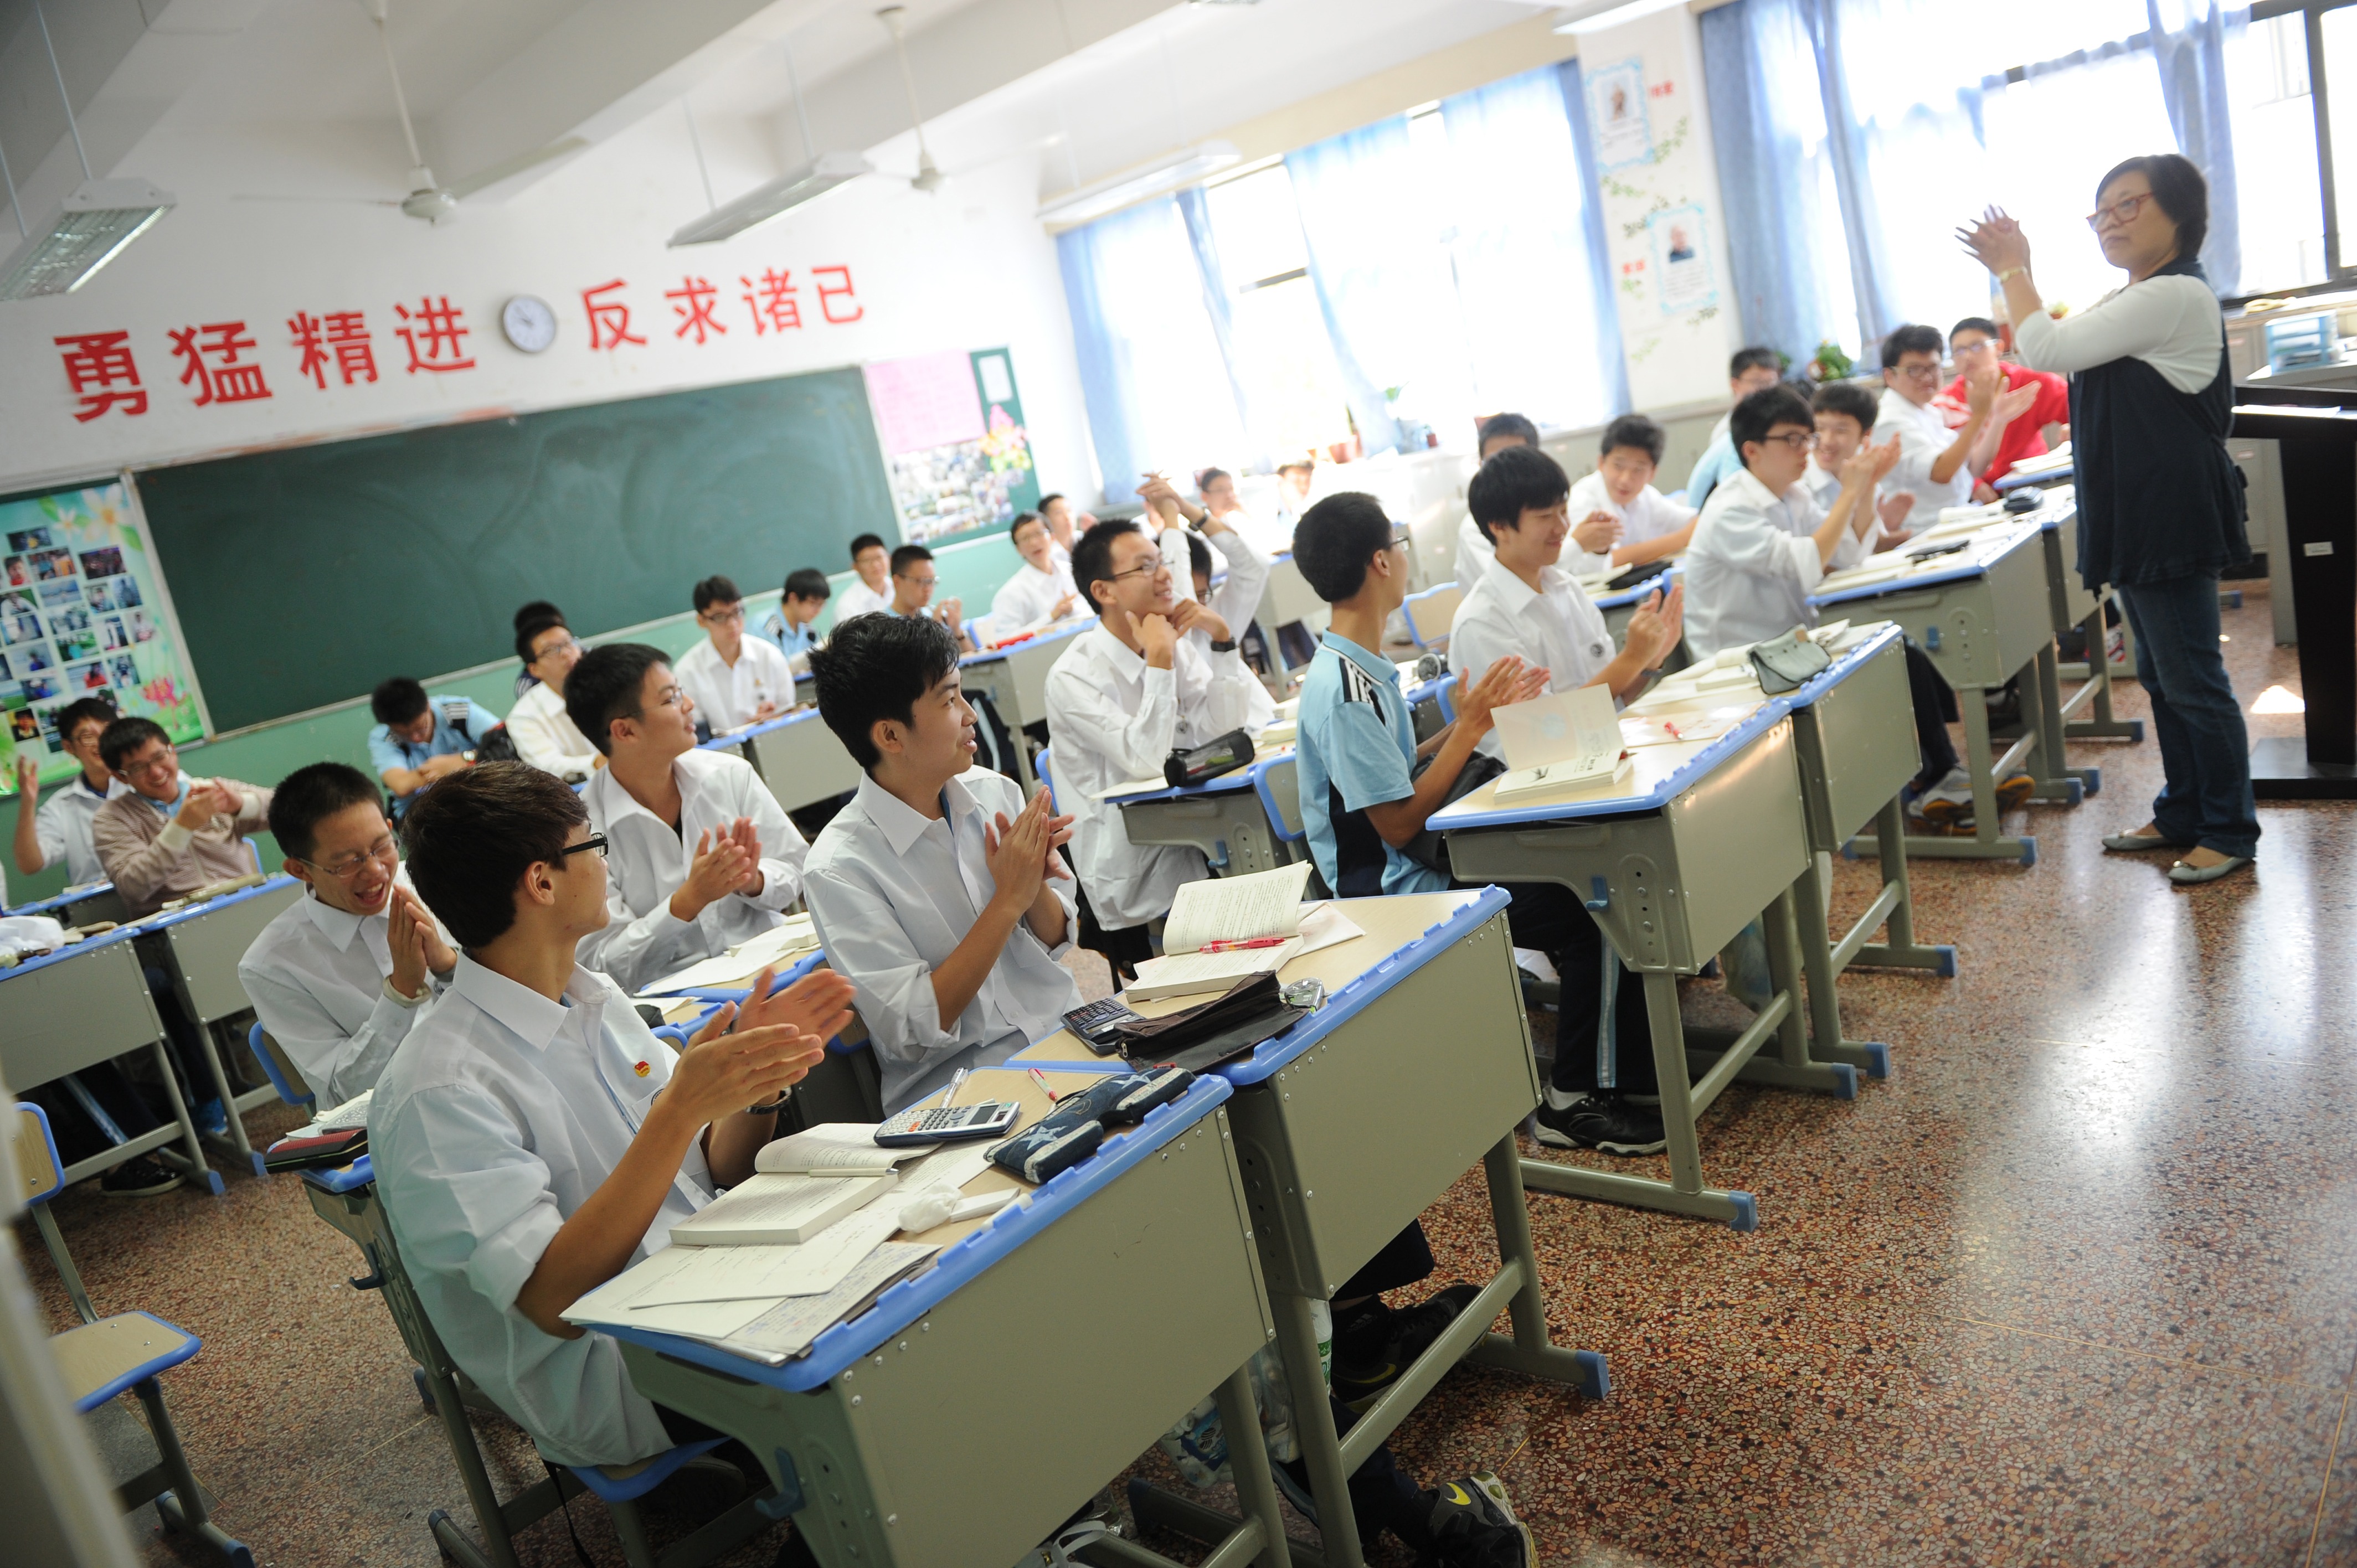 В школе китайский изучает 60 учащихся. Китайская школа. Старшие классы в Китае. Китайские школьники. Среднее образование в Китае.